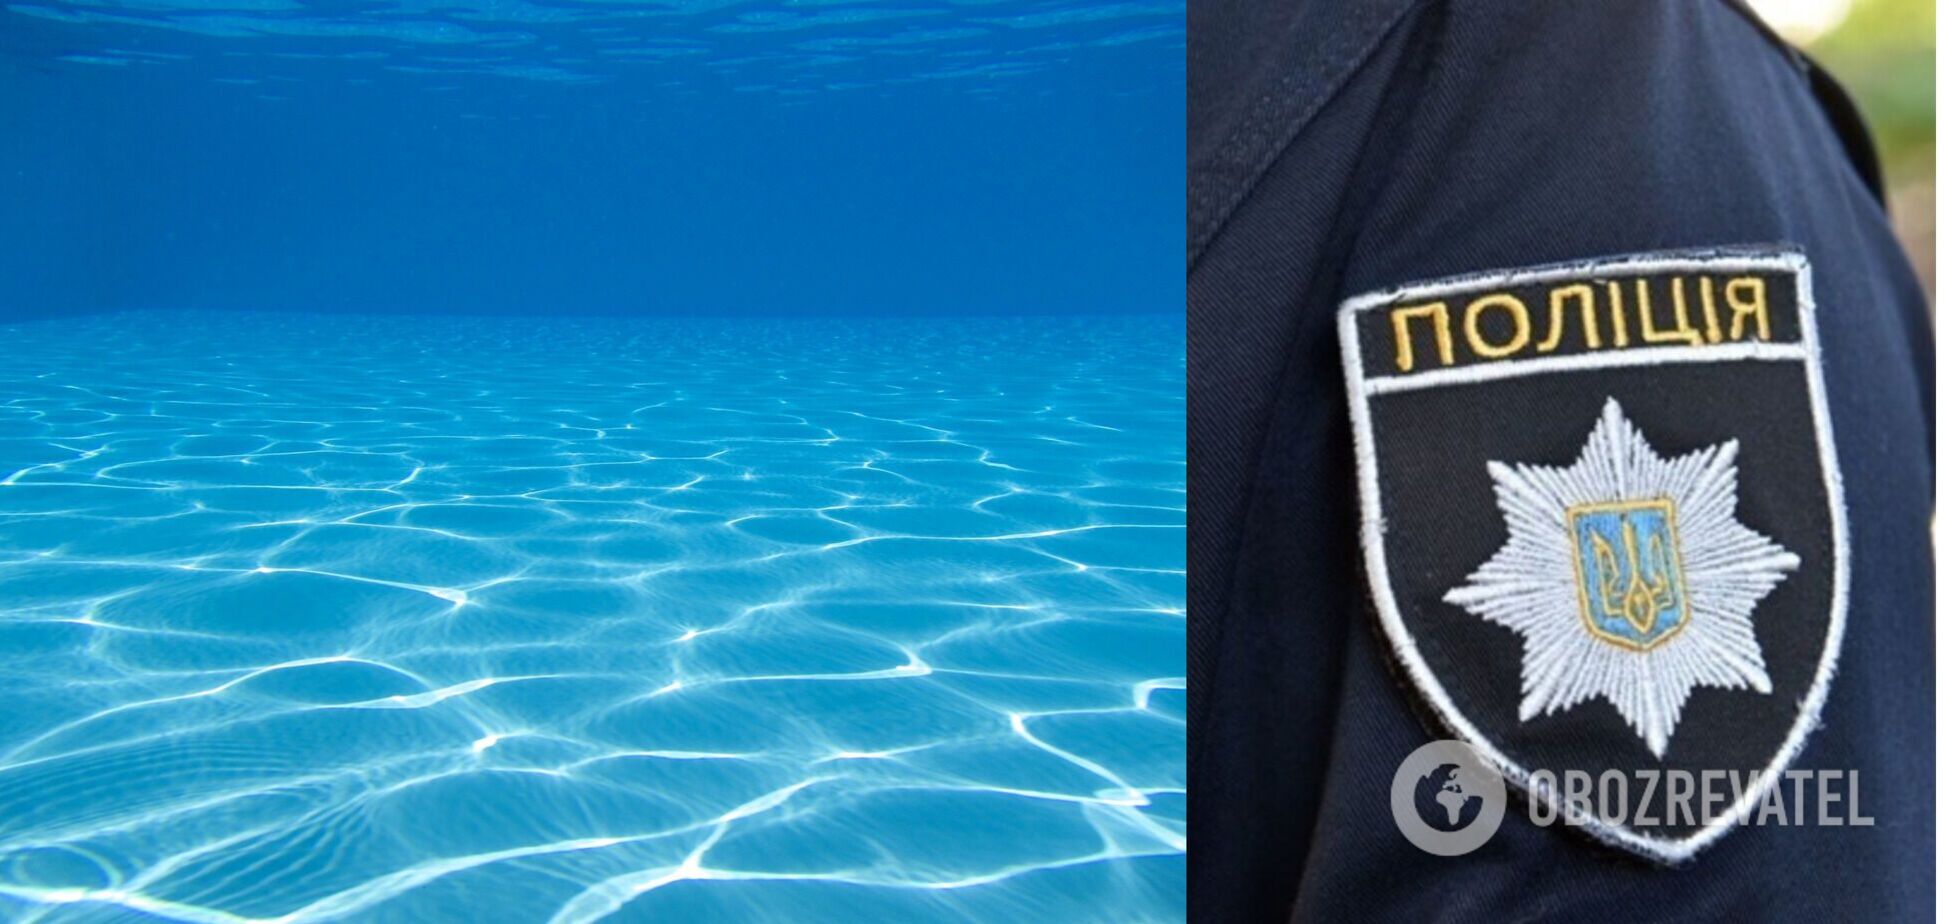 Під Дніпром на дні басейну знайшли експодружжя: поліція почала розслідування загадкової смерті